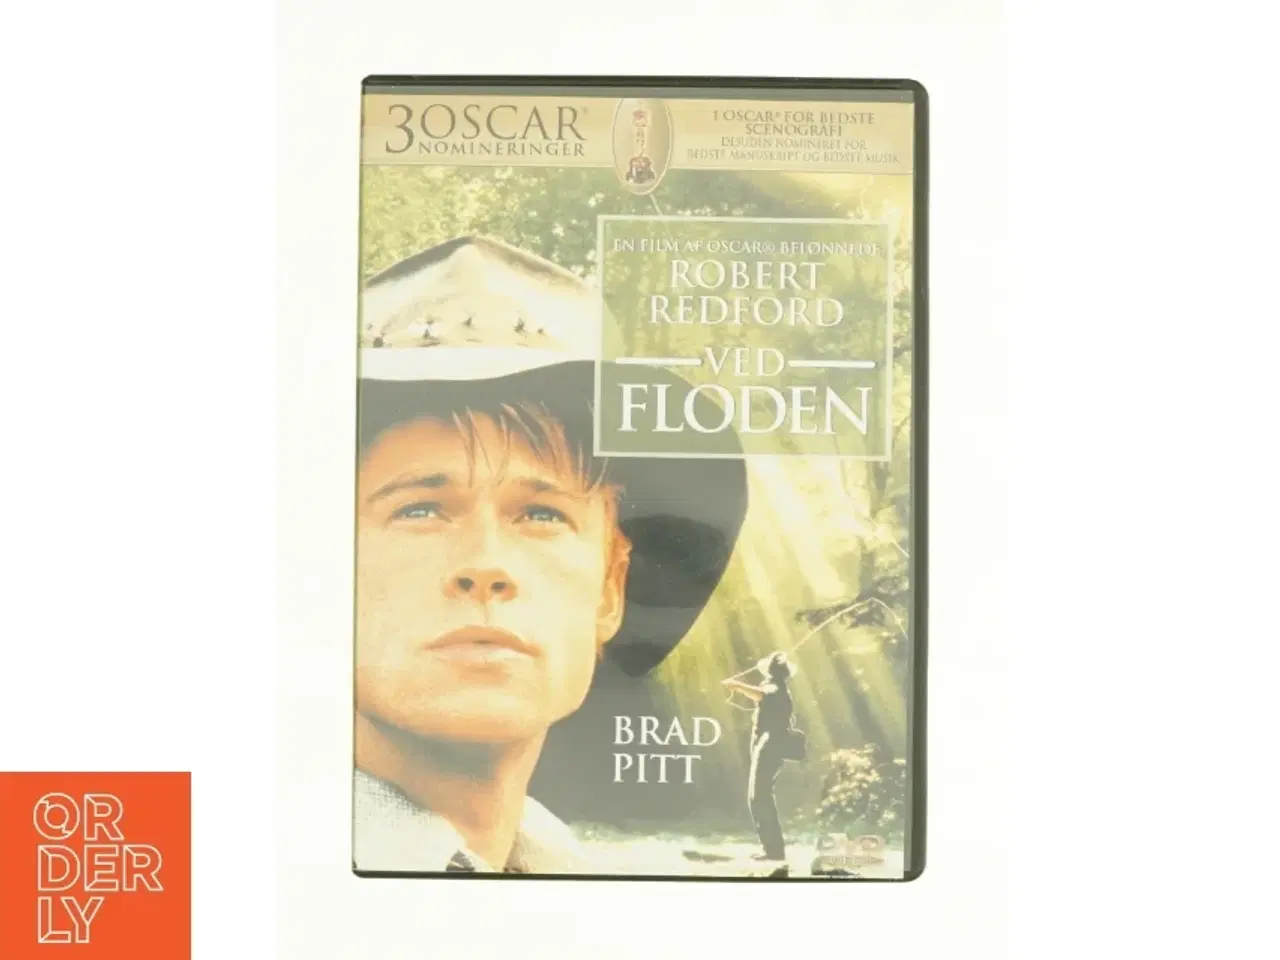 Billede 1 - Ved Floden fra DVD